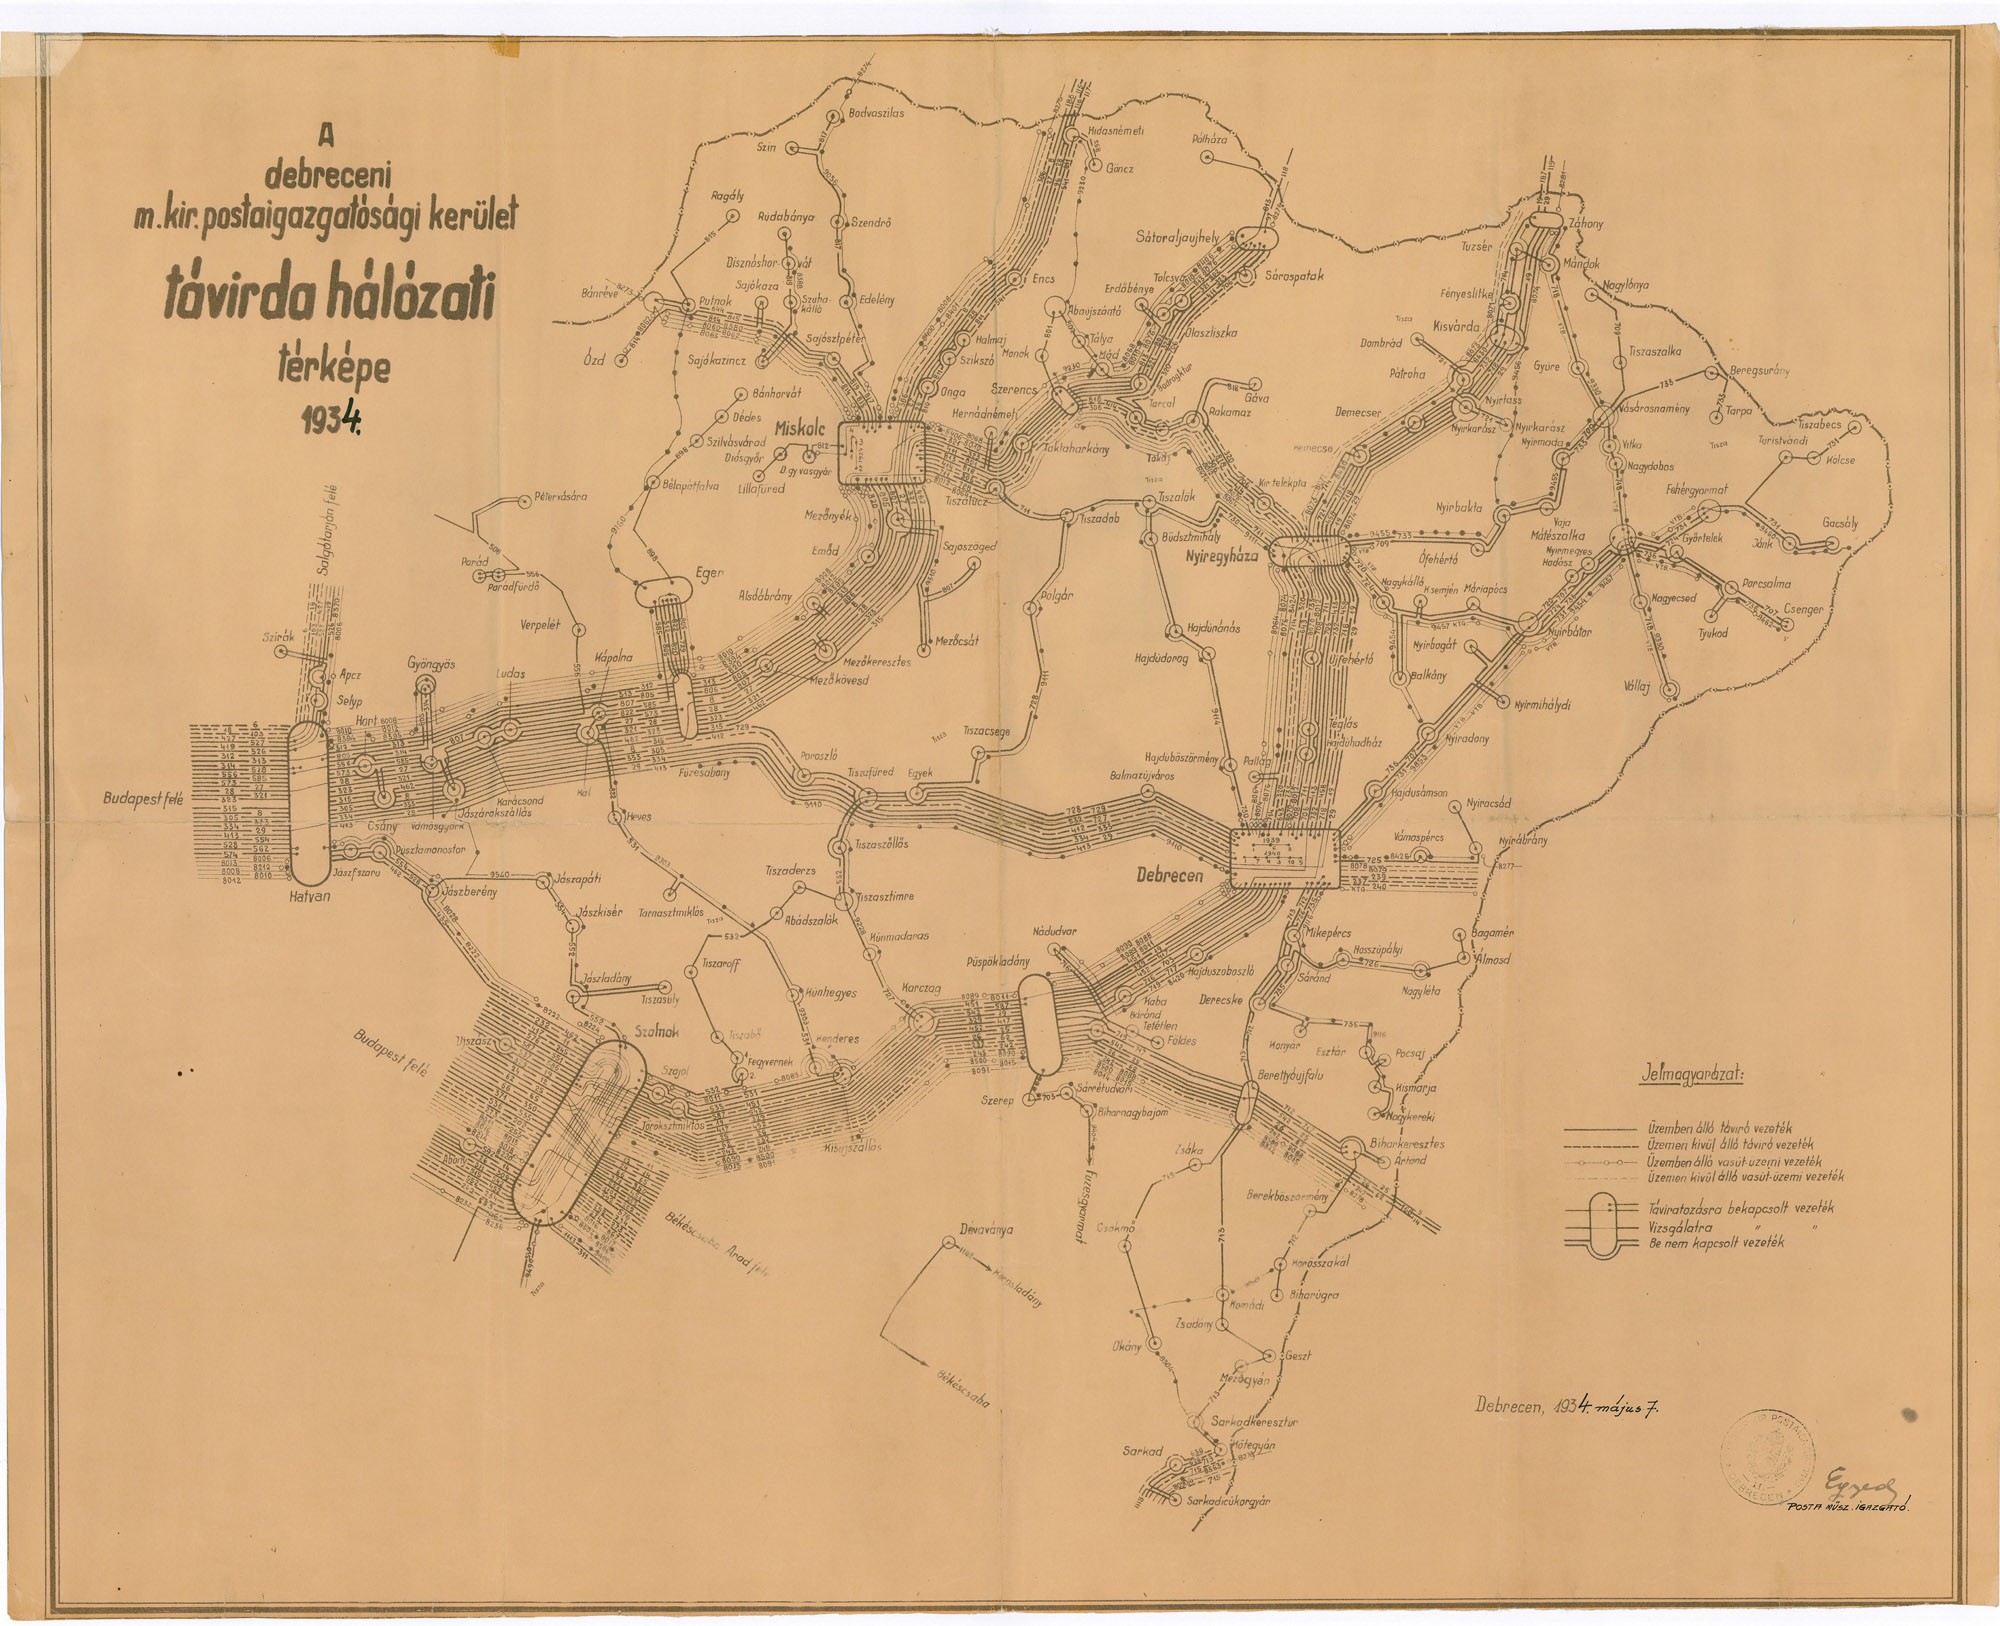 A debreceni magyar királyi postaigazgatósági kerület távírdahálózati térképe, 1934 (Postamúzeum CC BY-NC-SA)